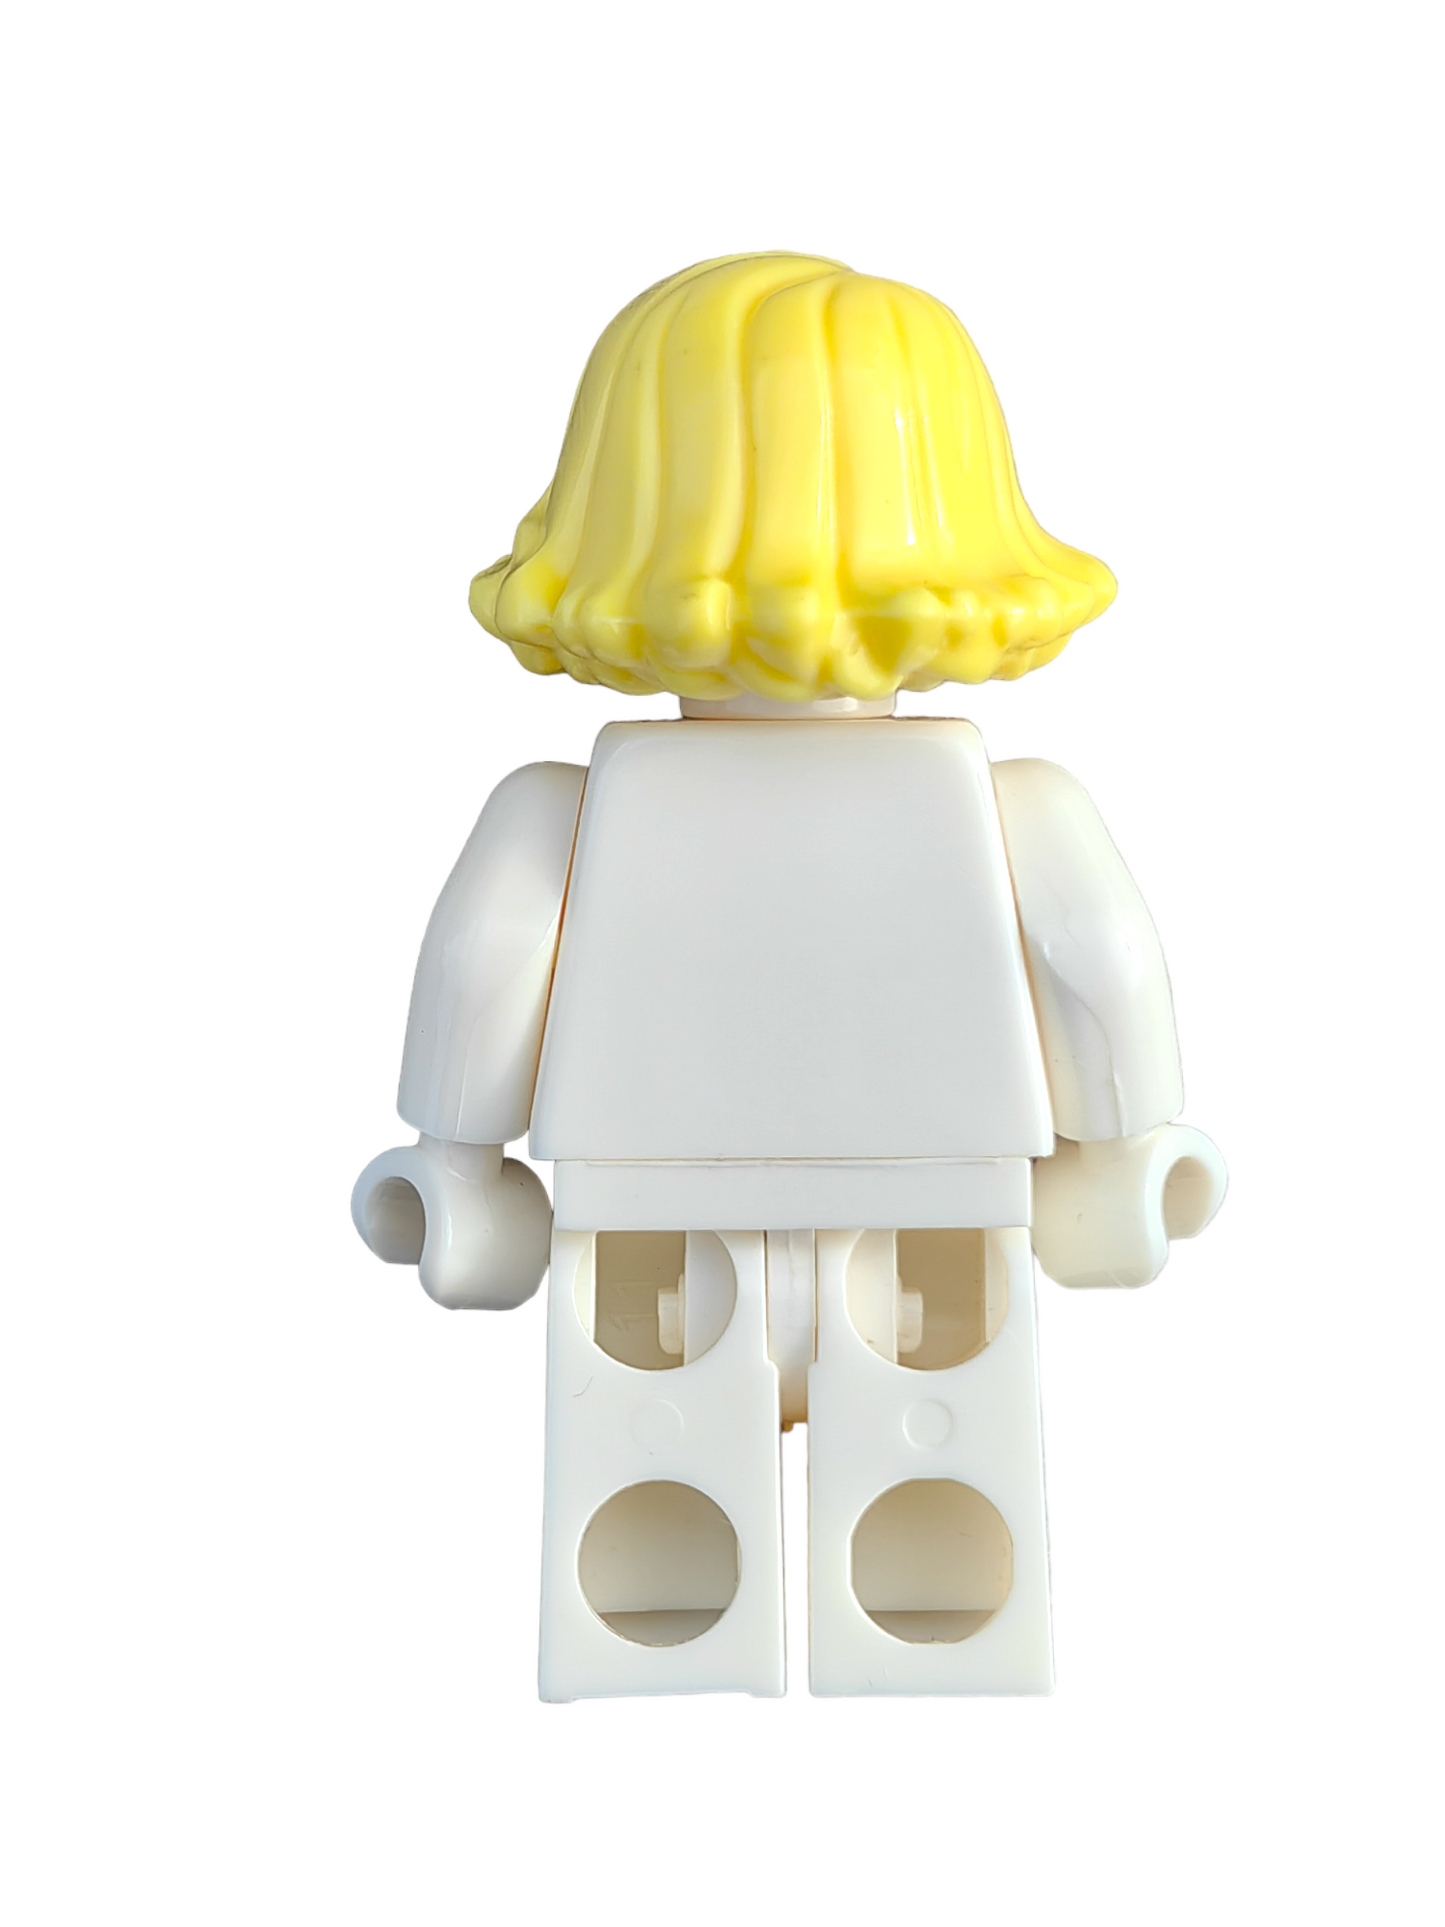 LEGO Wig, Yellow Hair Short Swept Sideways - UB1289